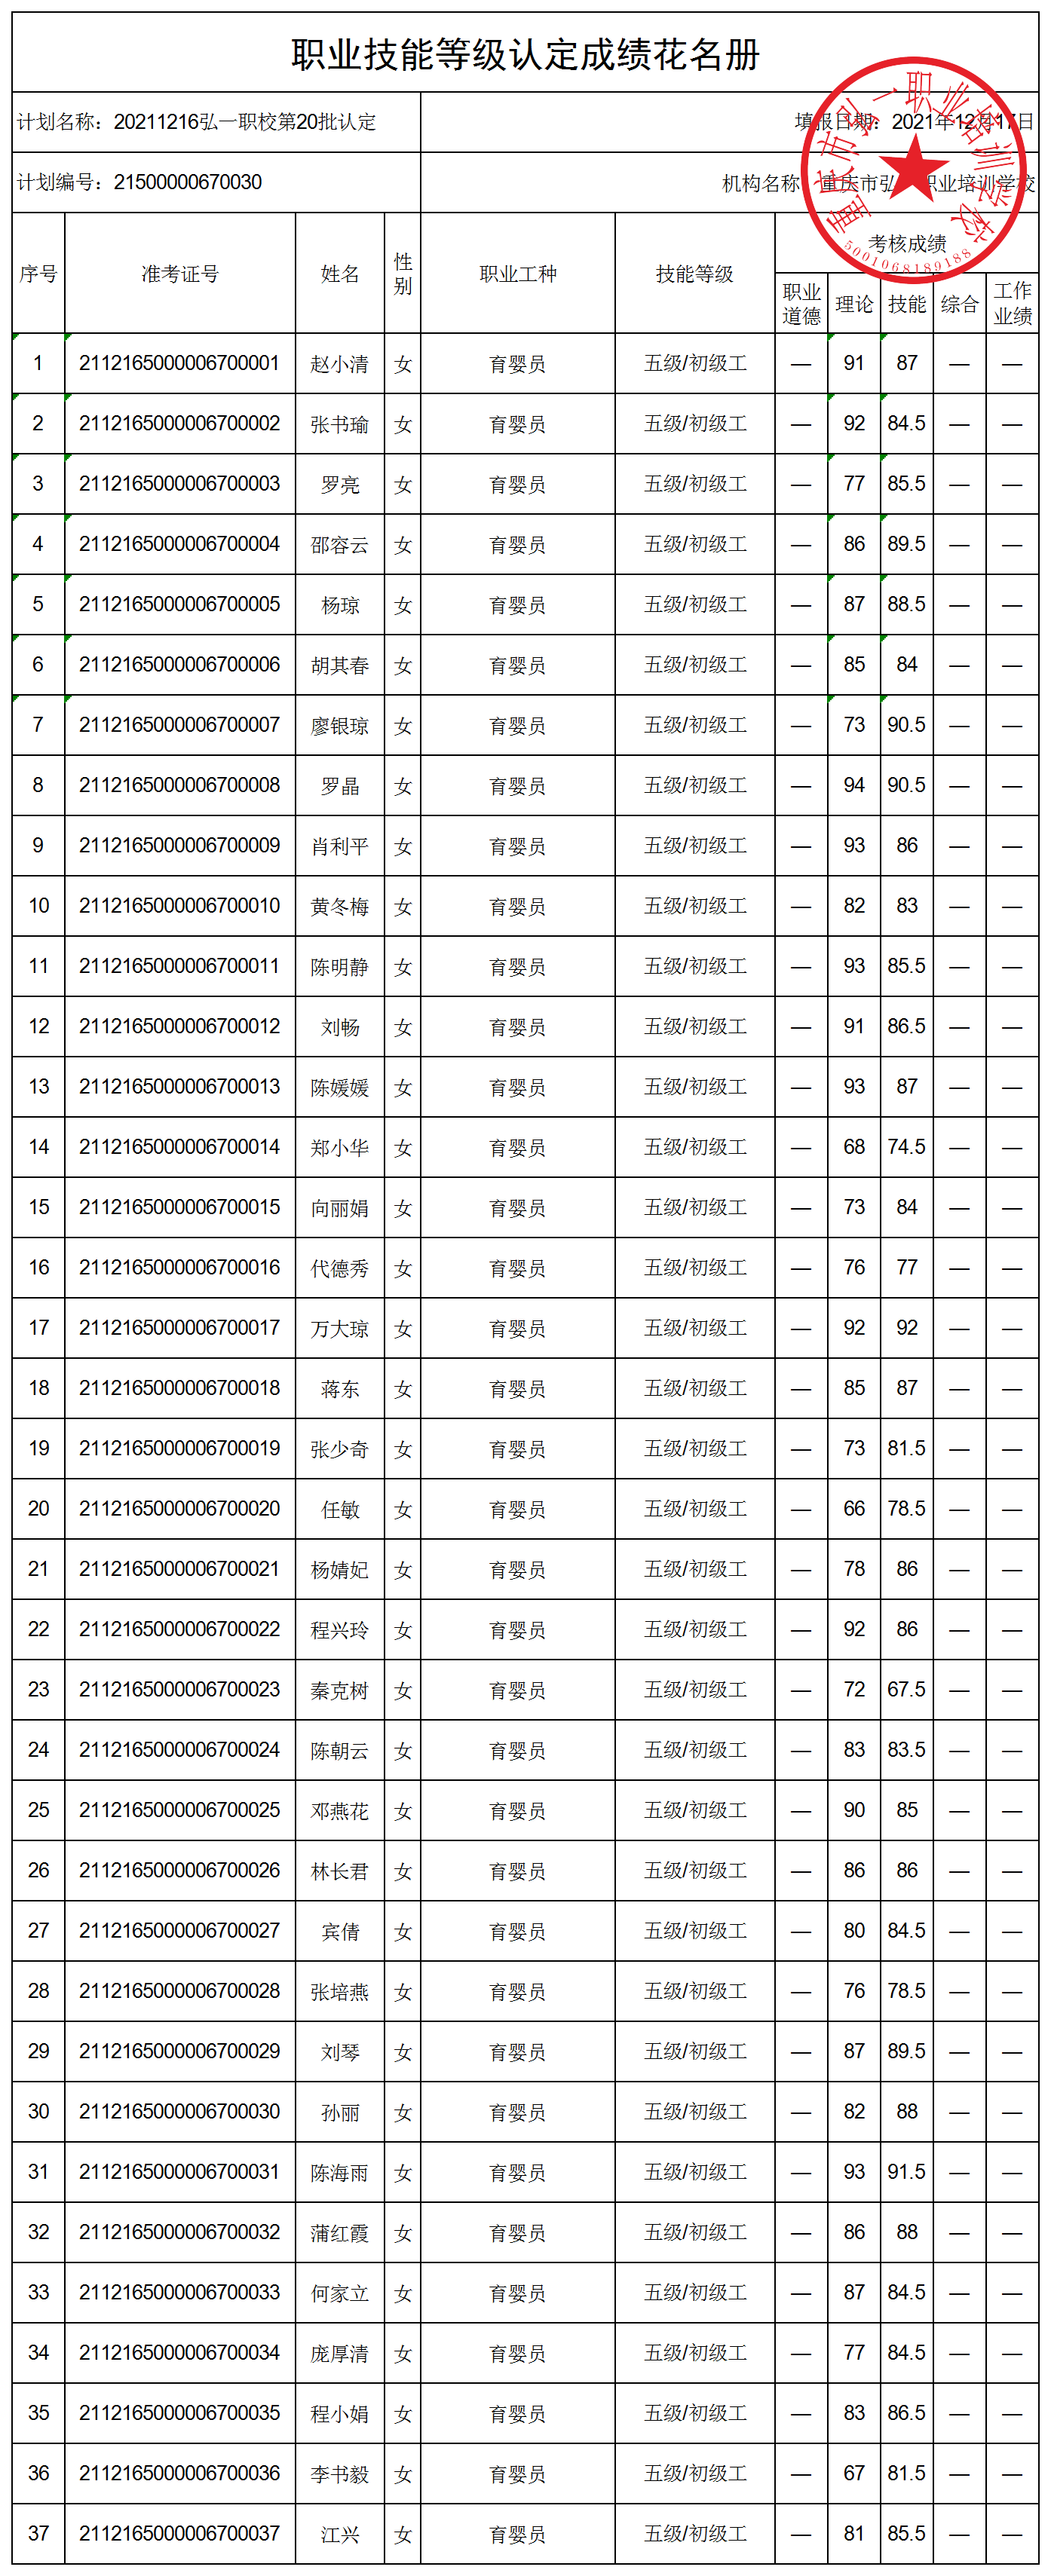 20211216弘一职校第20批认定技能等级认定人员成绩花名册都（公示表）.png